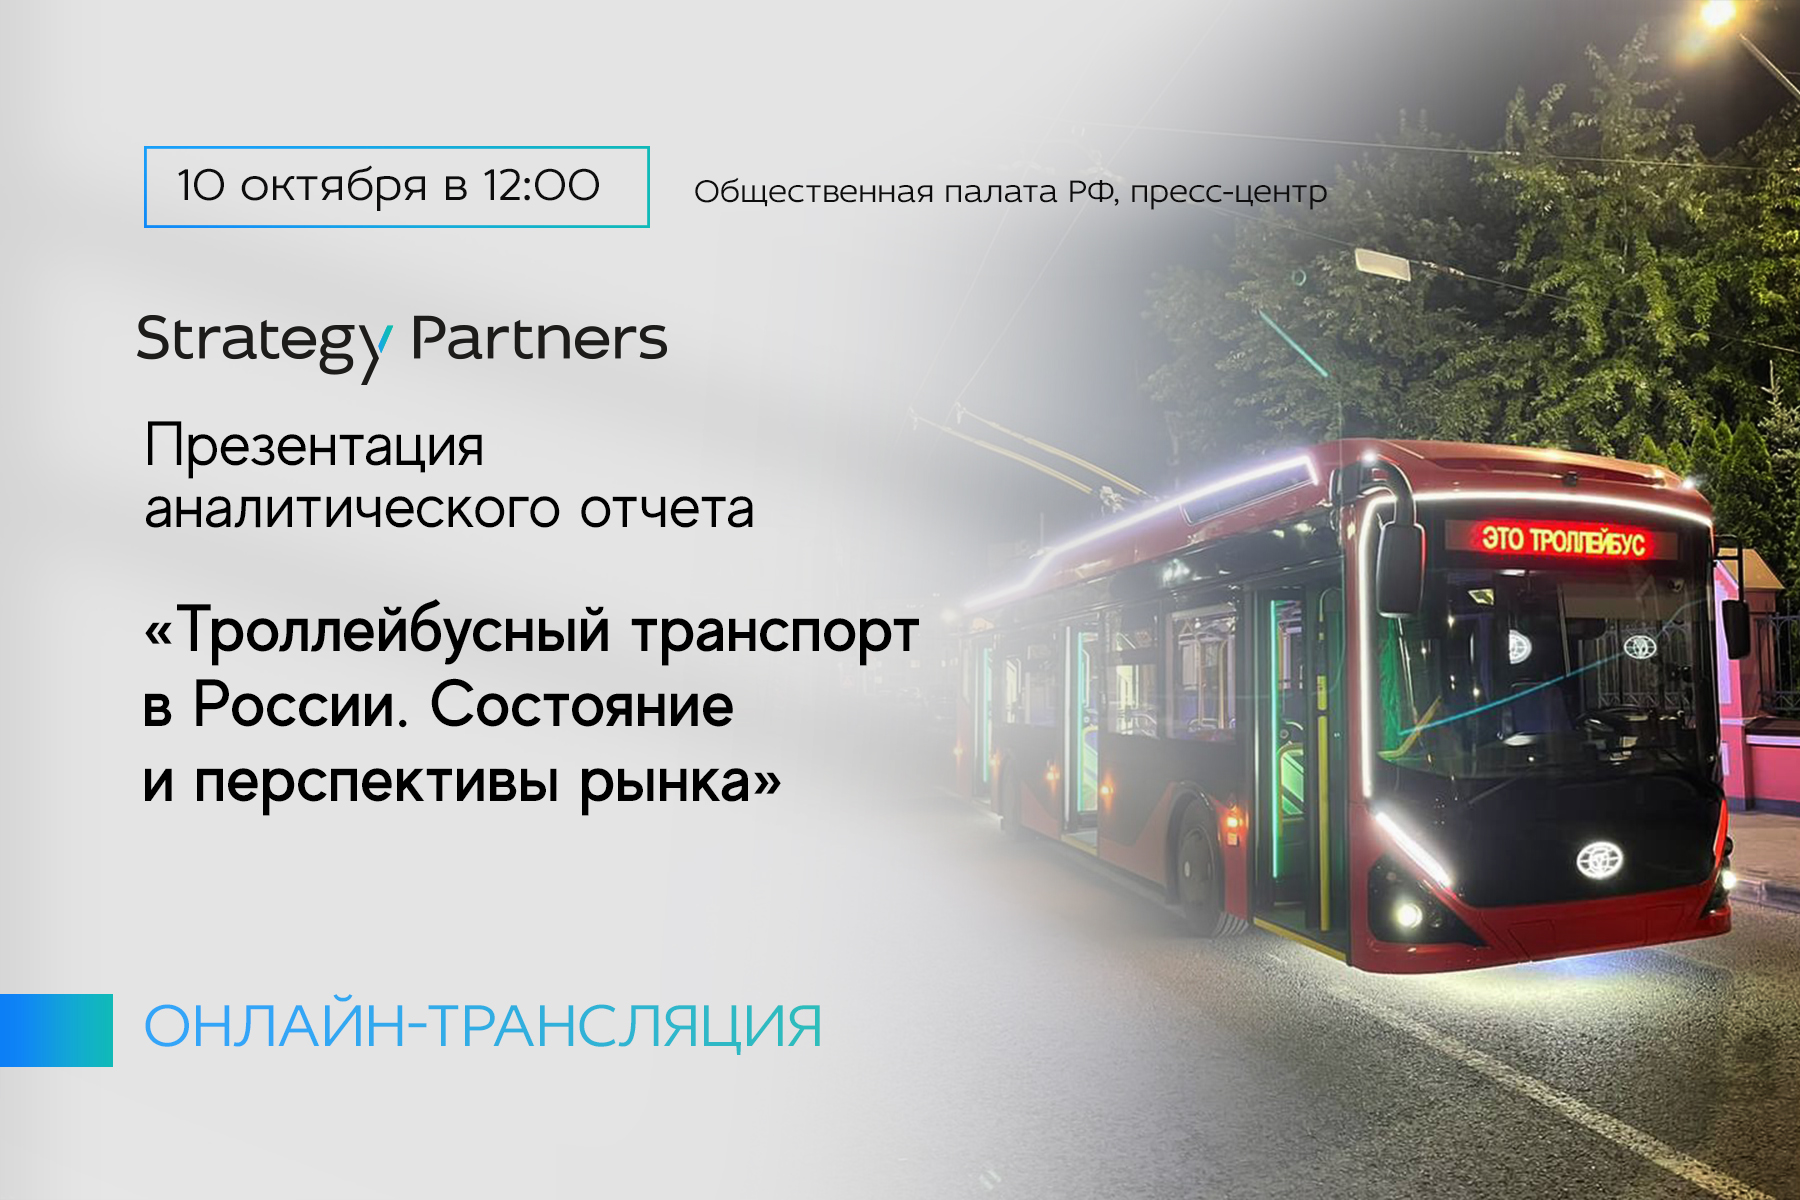 10 октября состоится презентация аналитического отчета «Троллейбусный транспорт в России. Состояние и перспективы рынка»